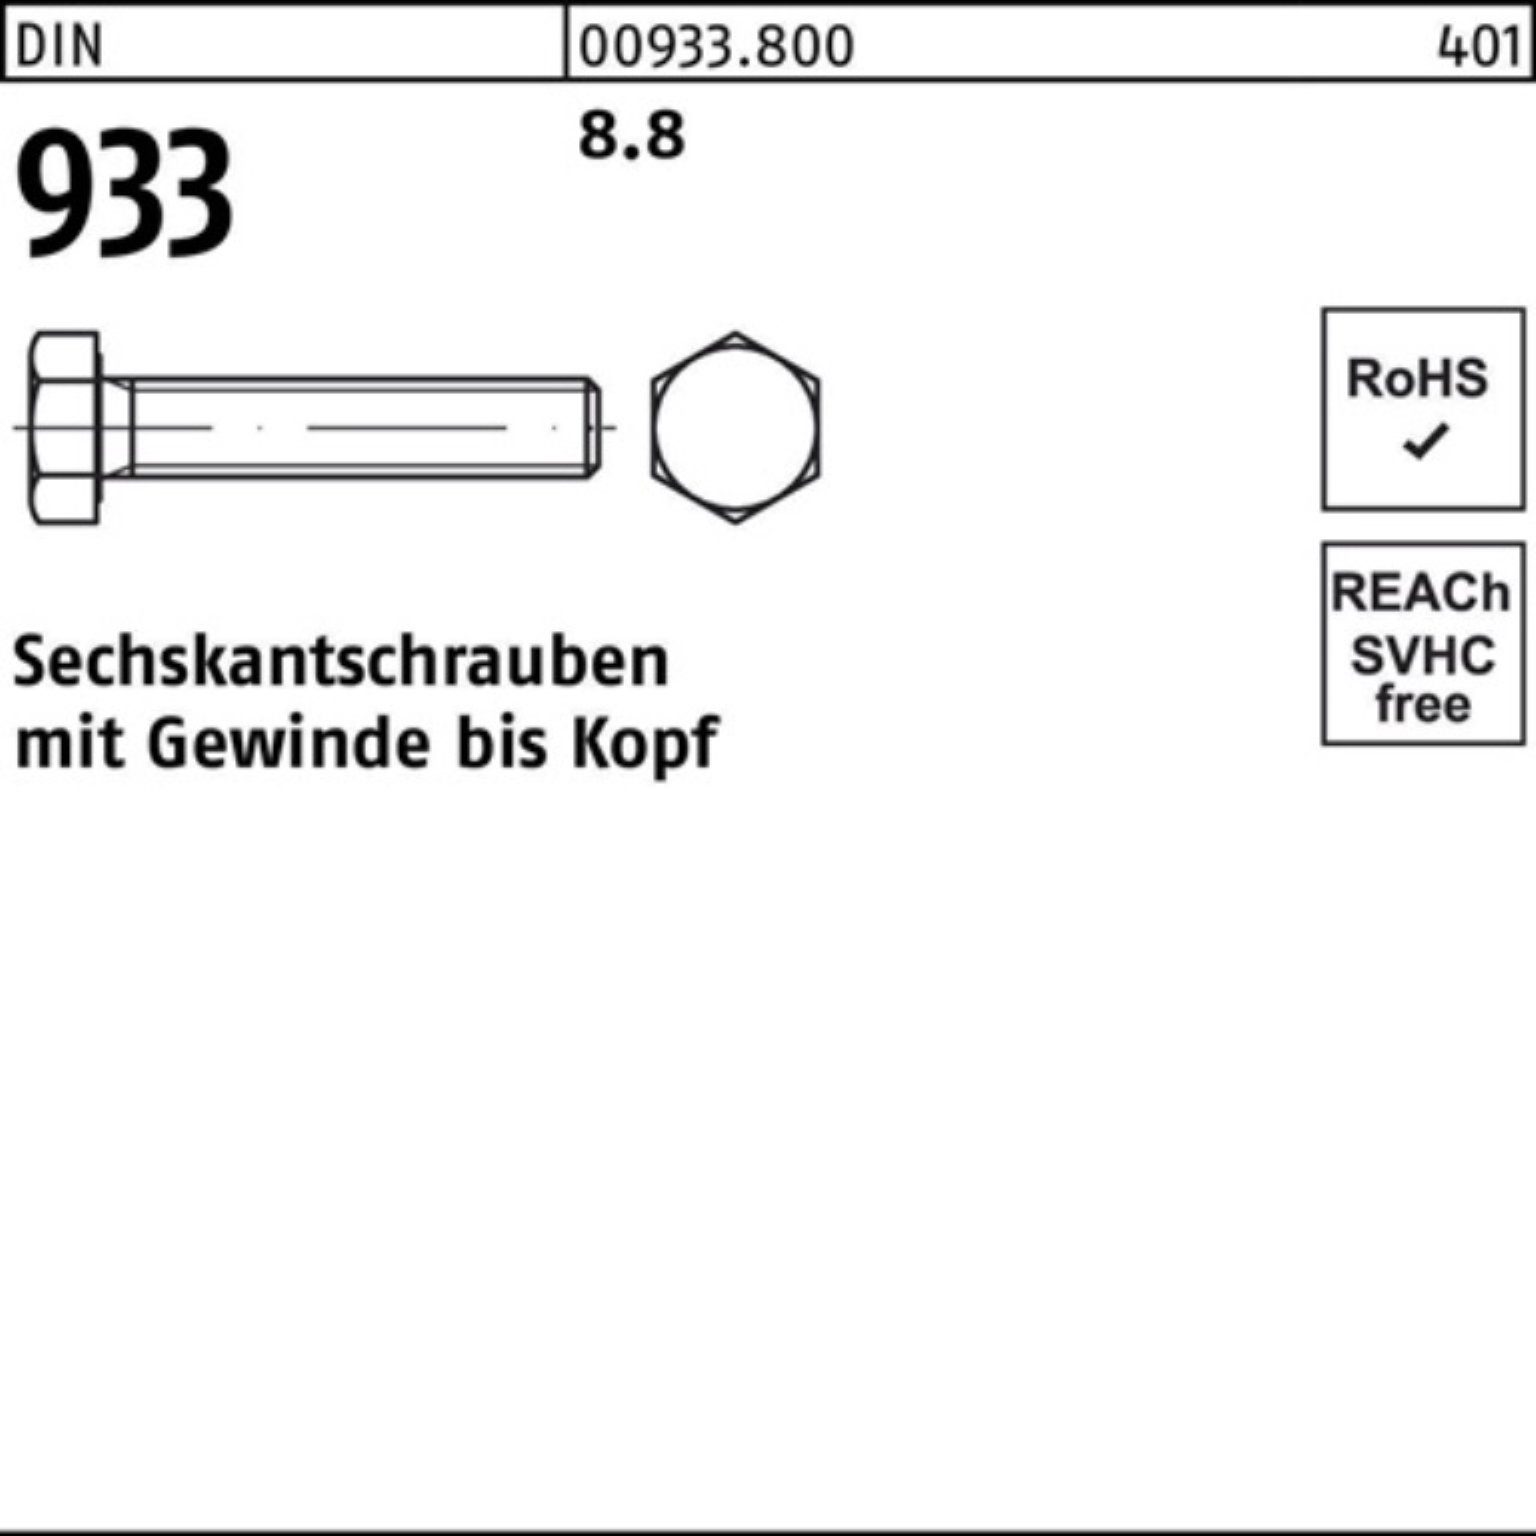 Pack 8.8 Sechskantschraube 110 Reyher Stück 933 DIN 100er 933 DIN 1 Sechskantschraube VG M30x